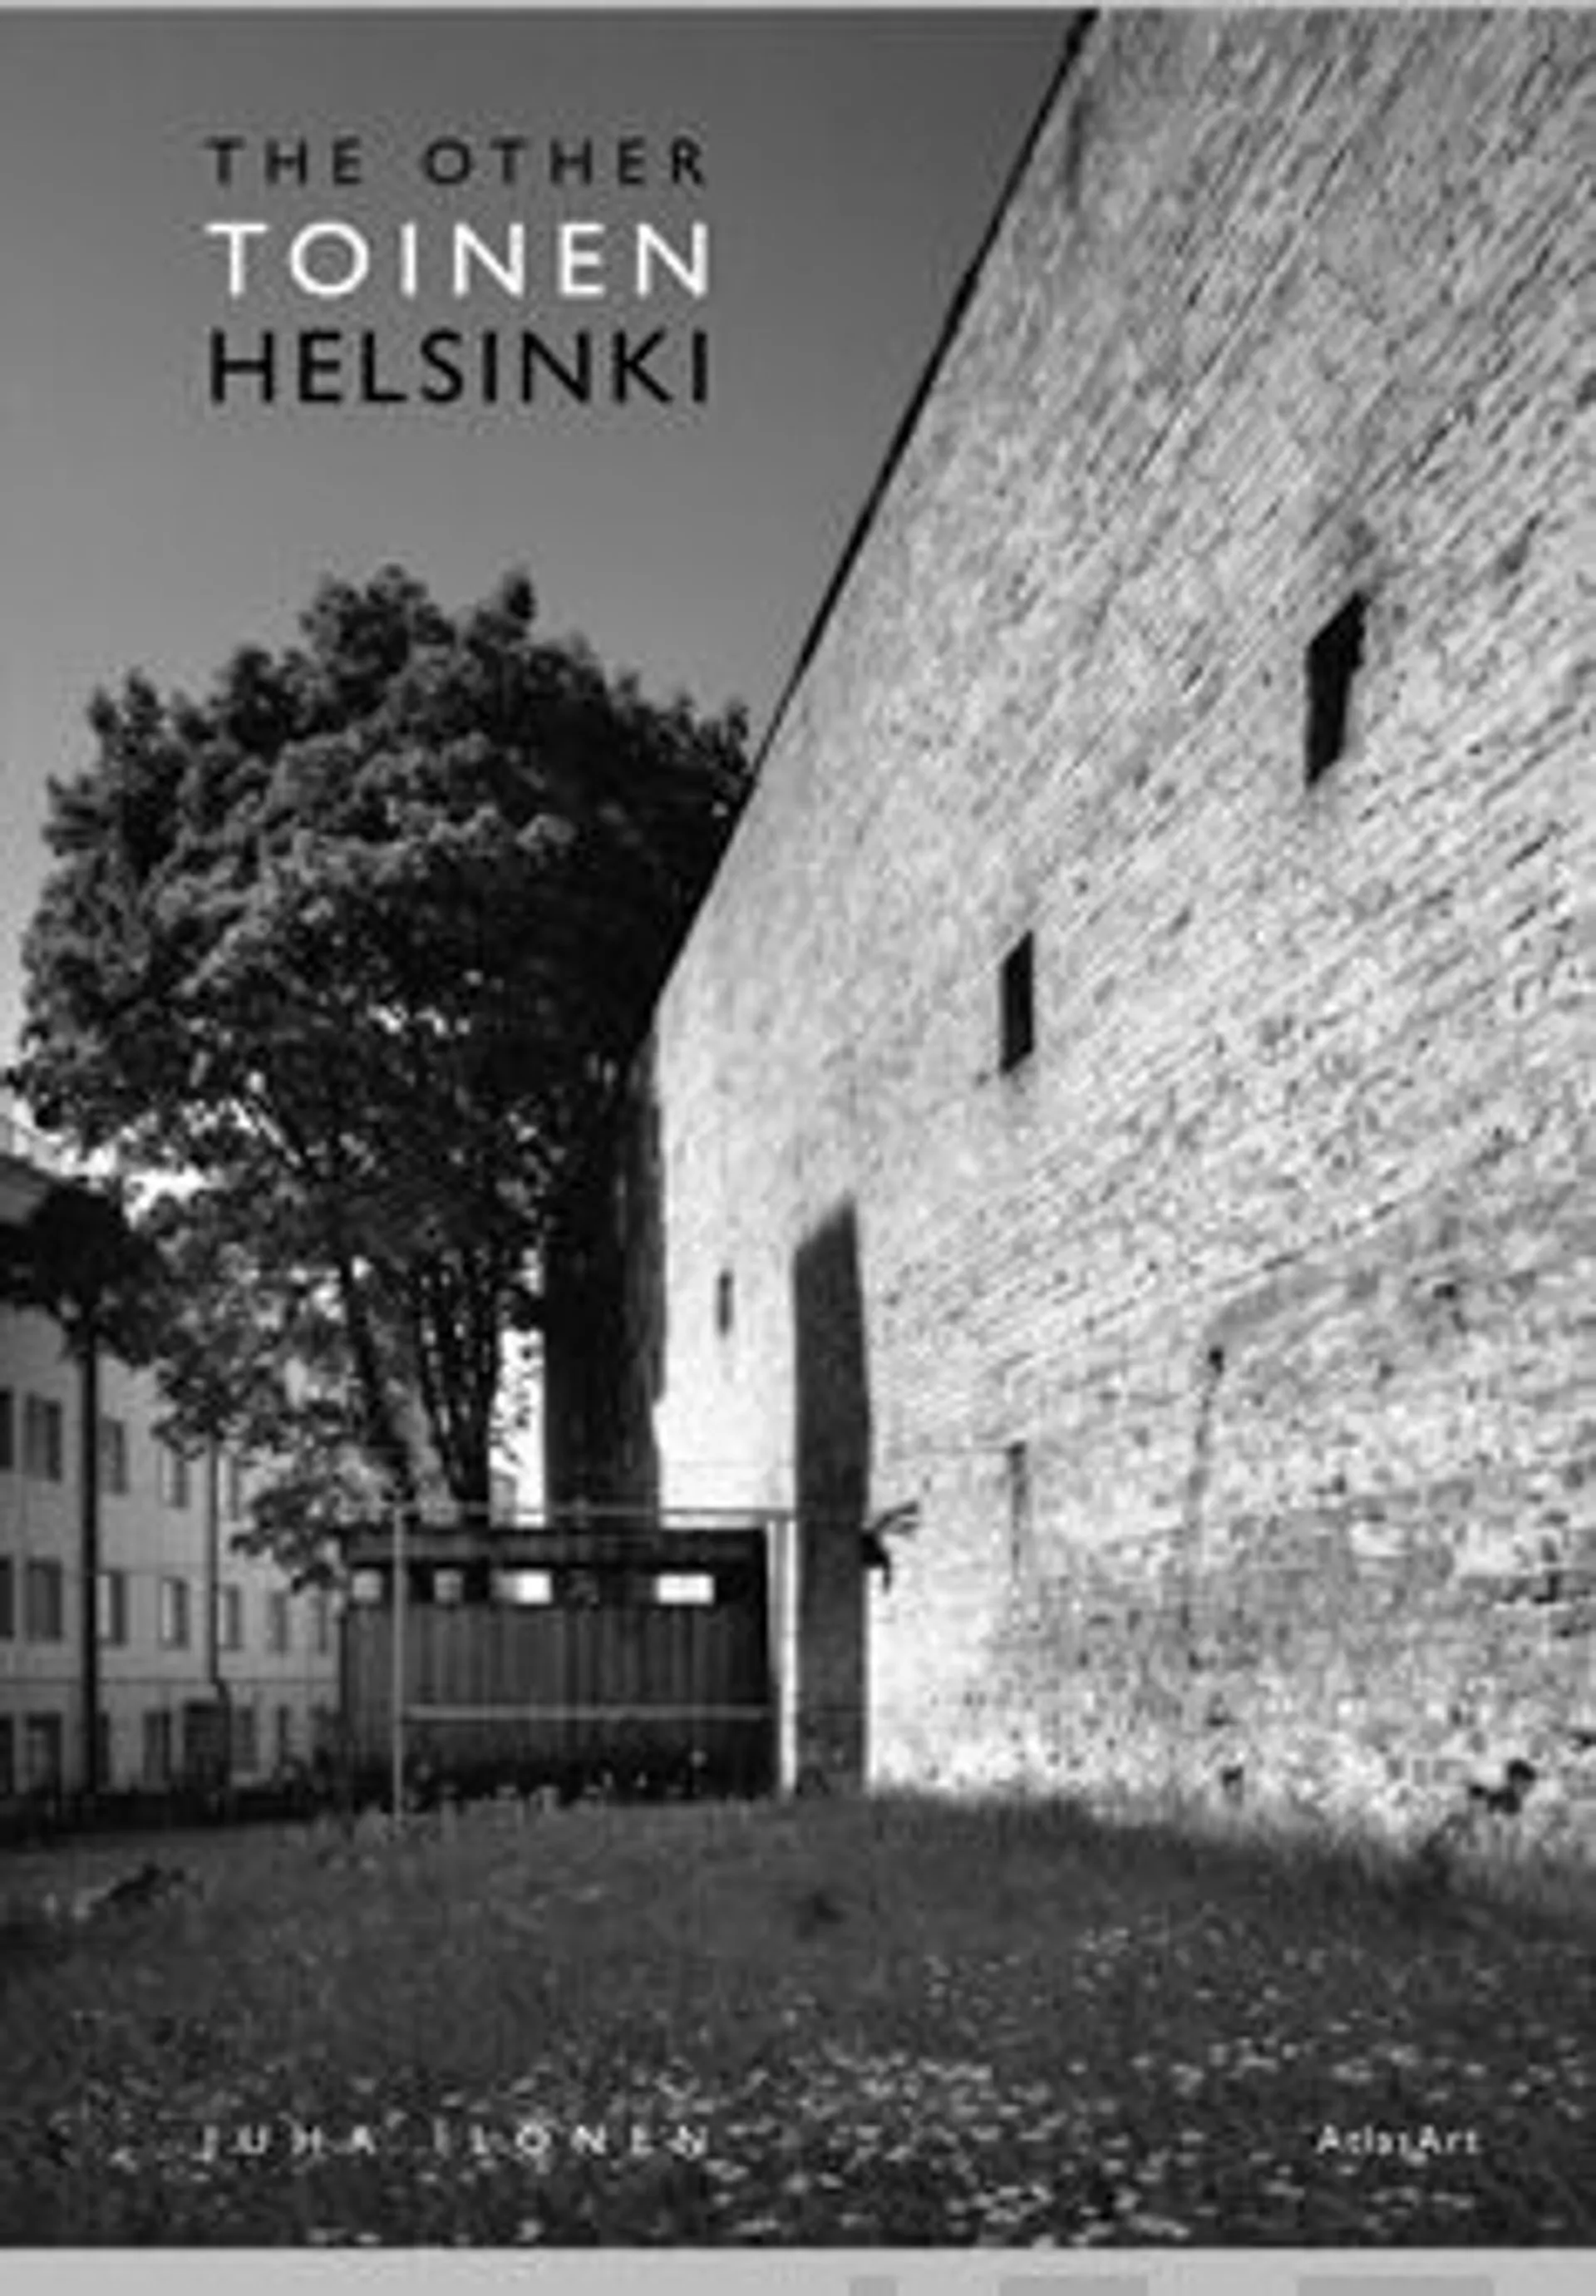 Ilonen, Toinen Helsinki - The other Helsinki